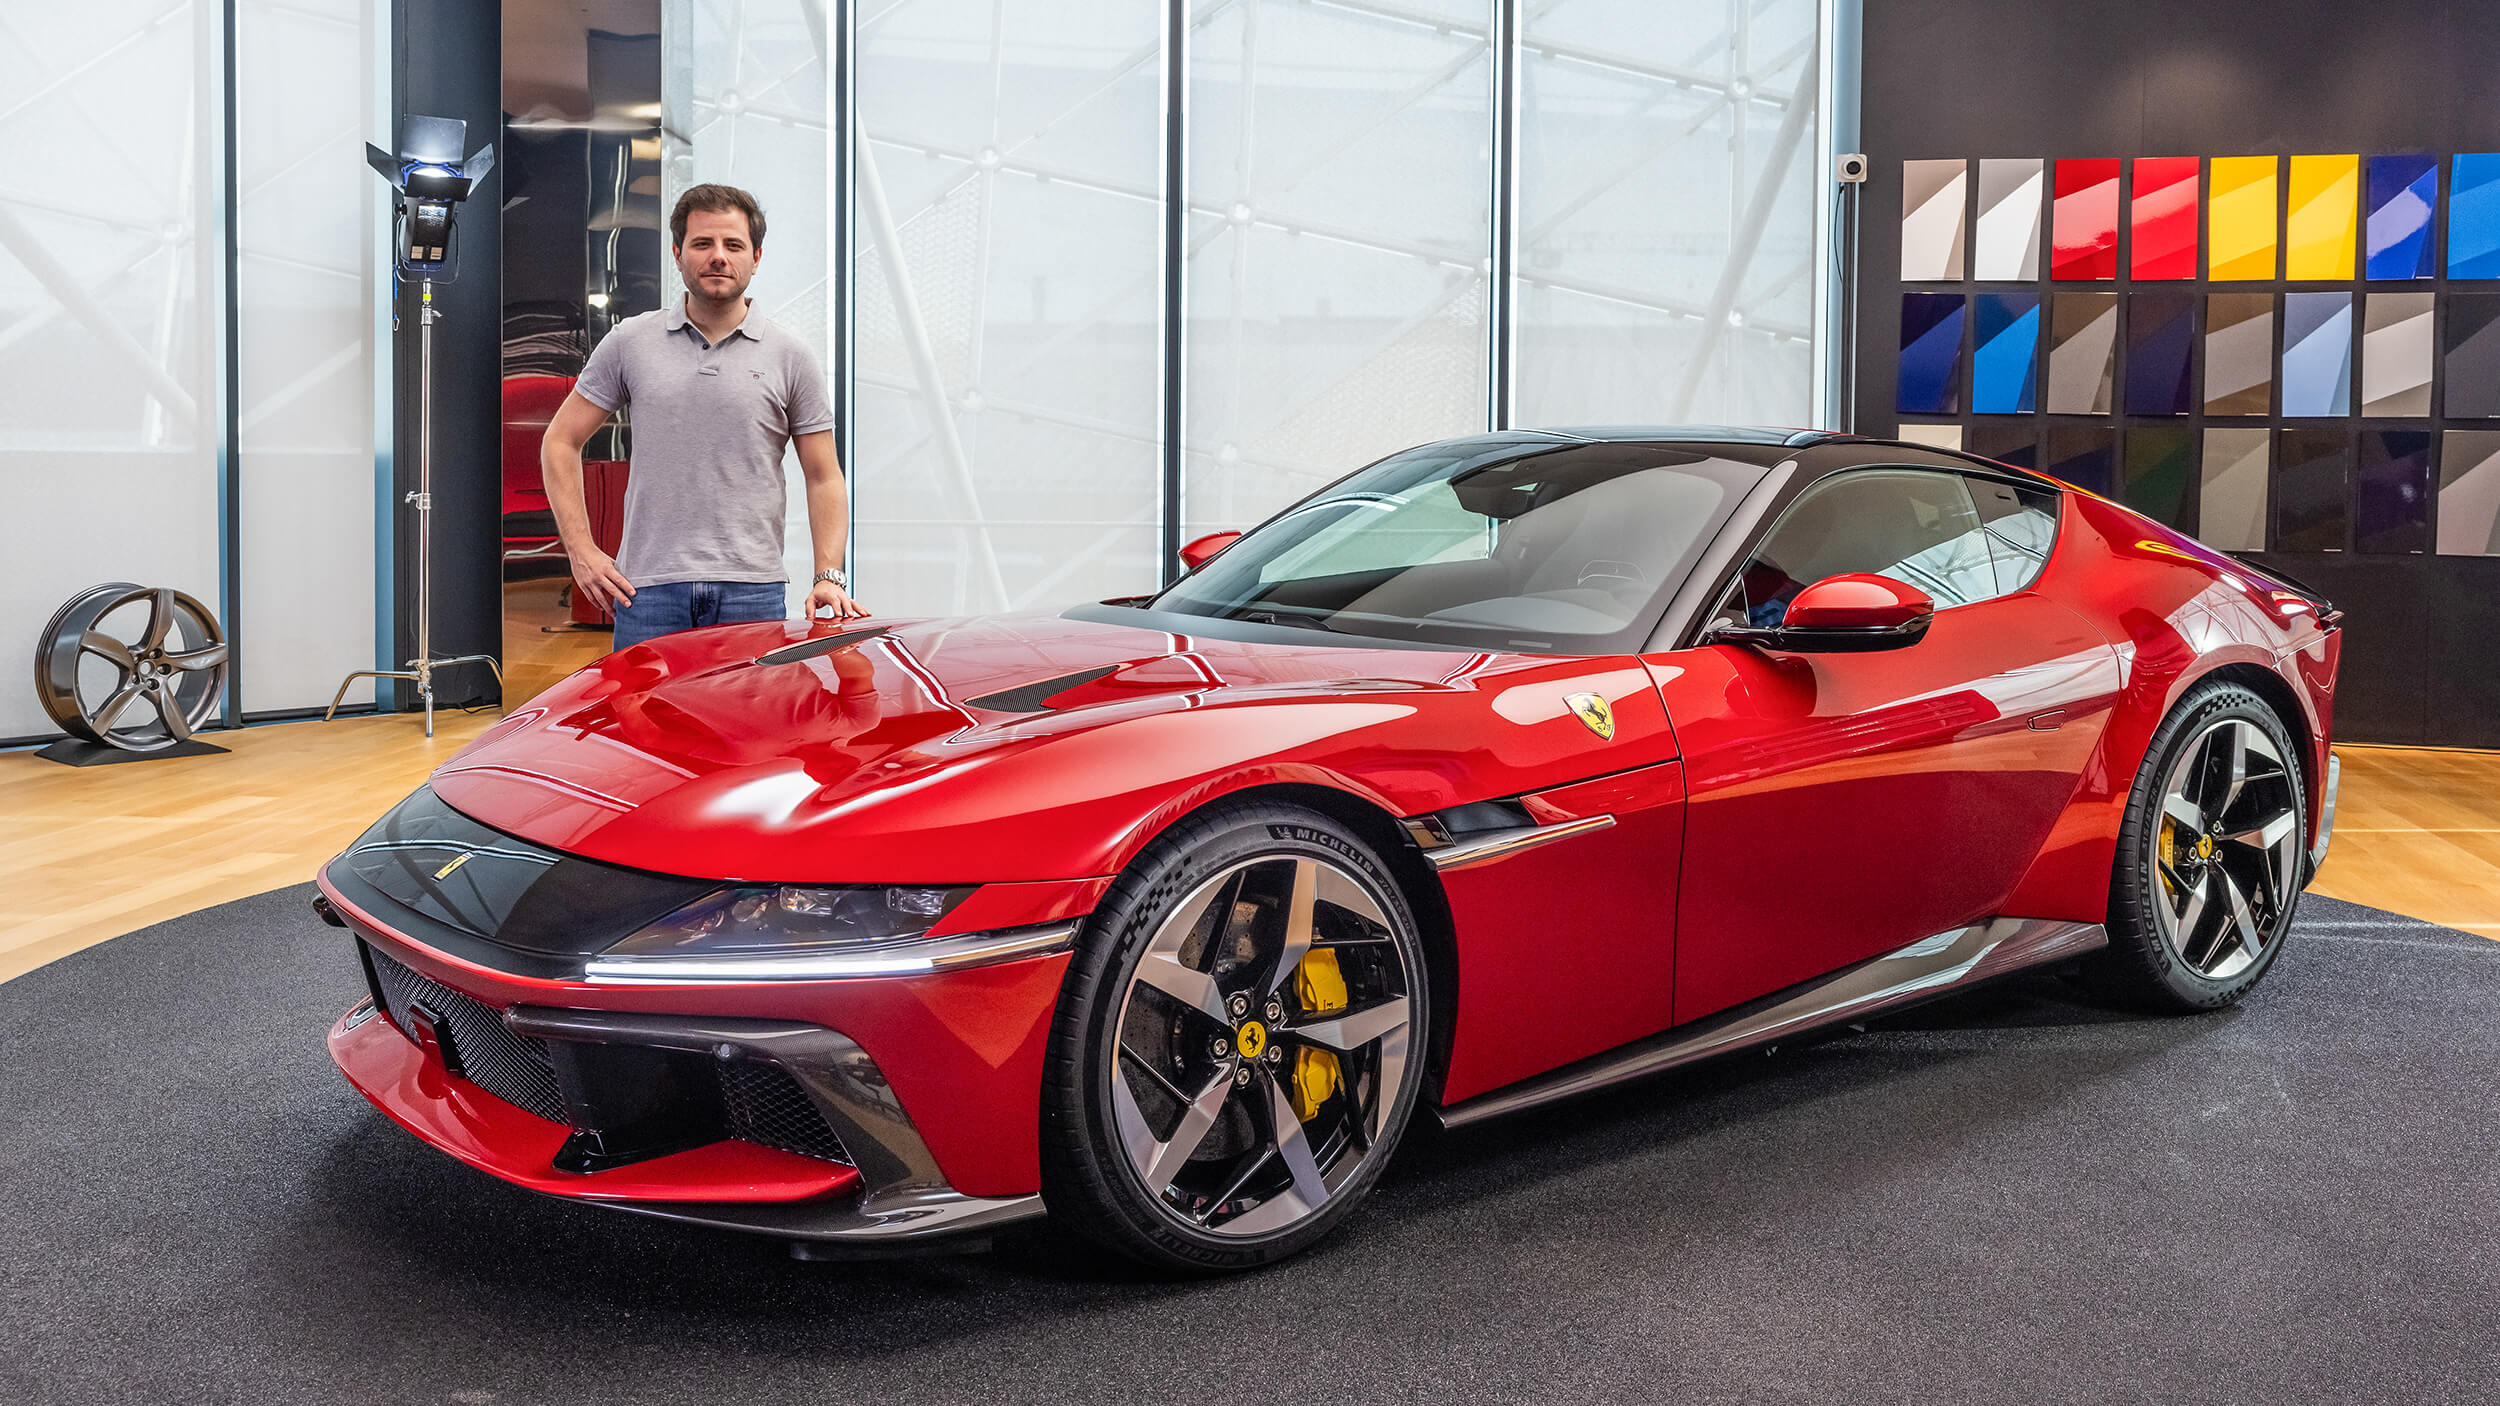 Fomos a Itália conhecer o novo Ferrari com motor à moda antiga